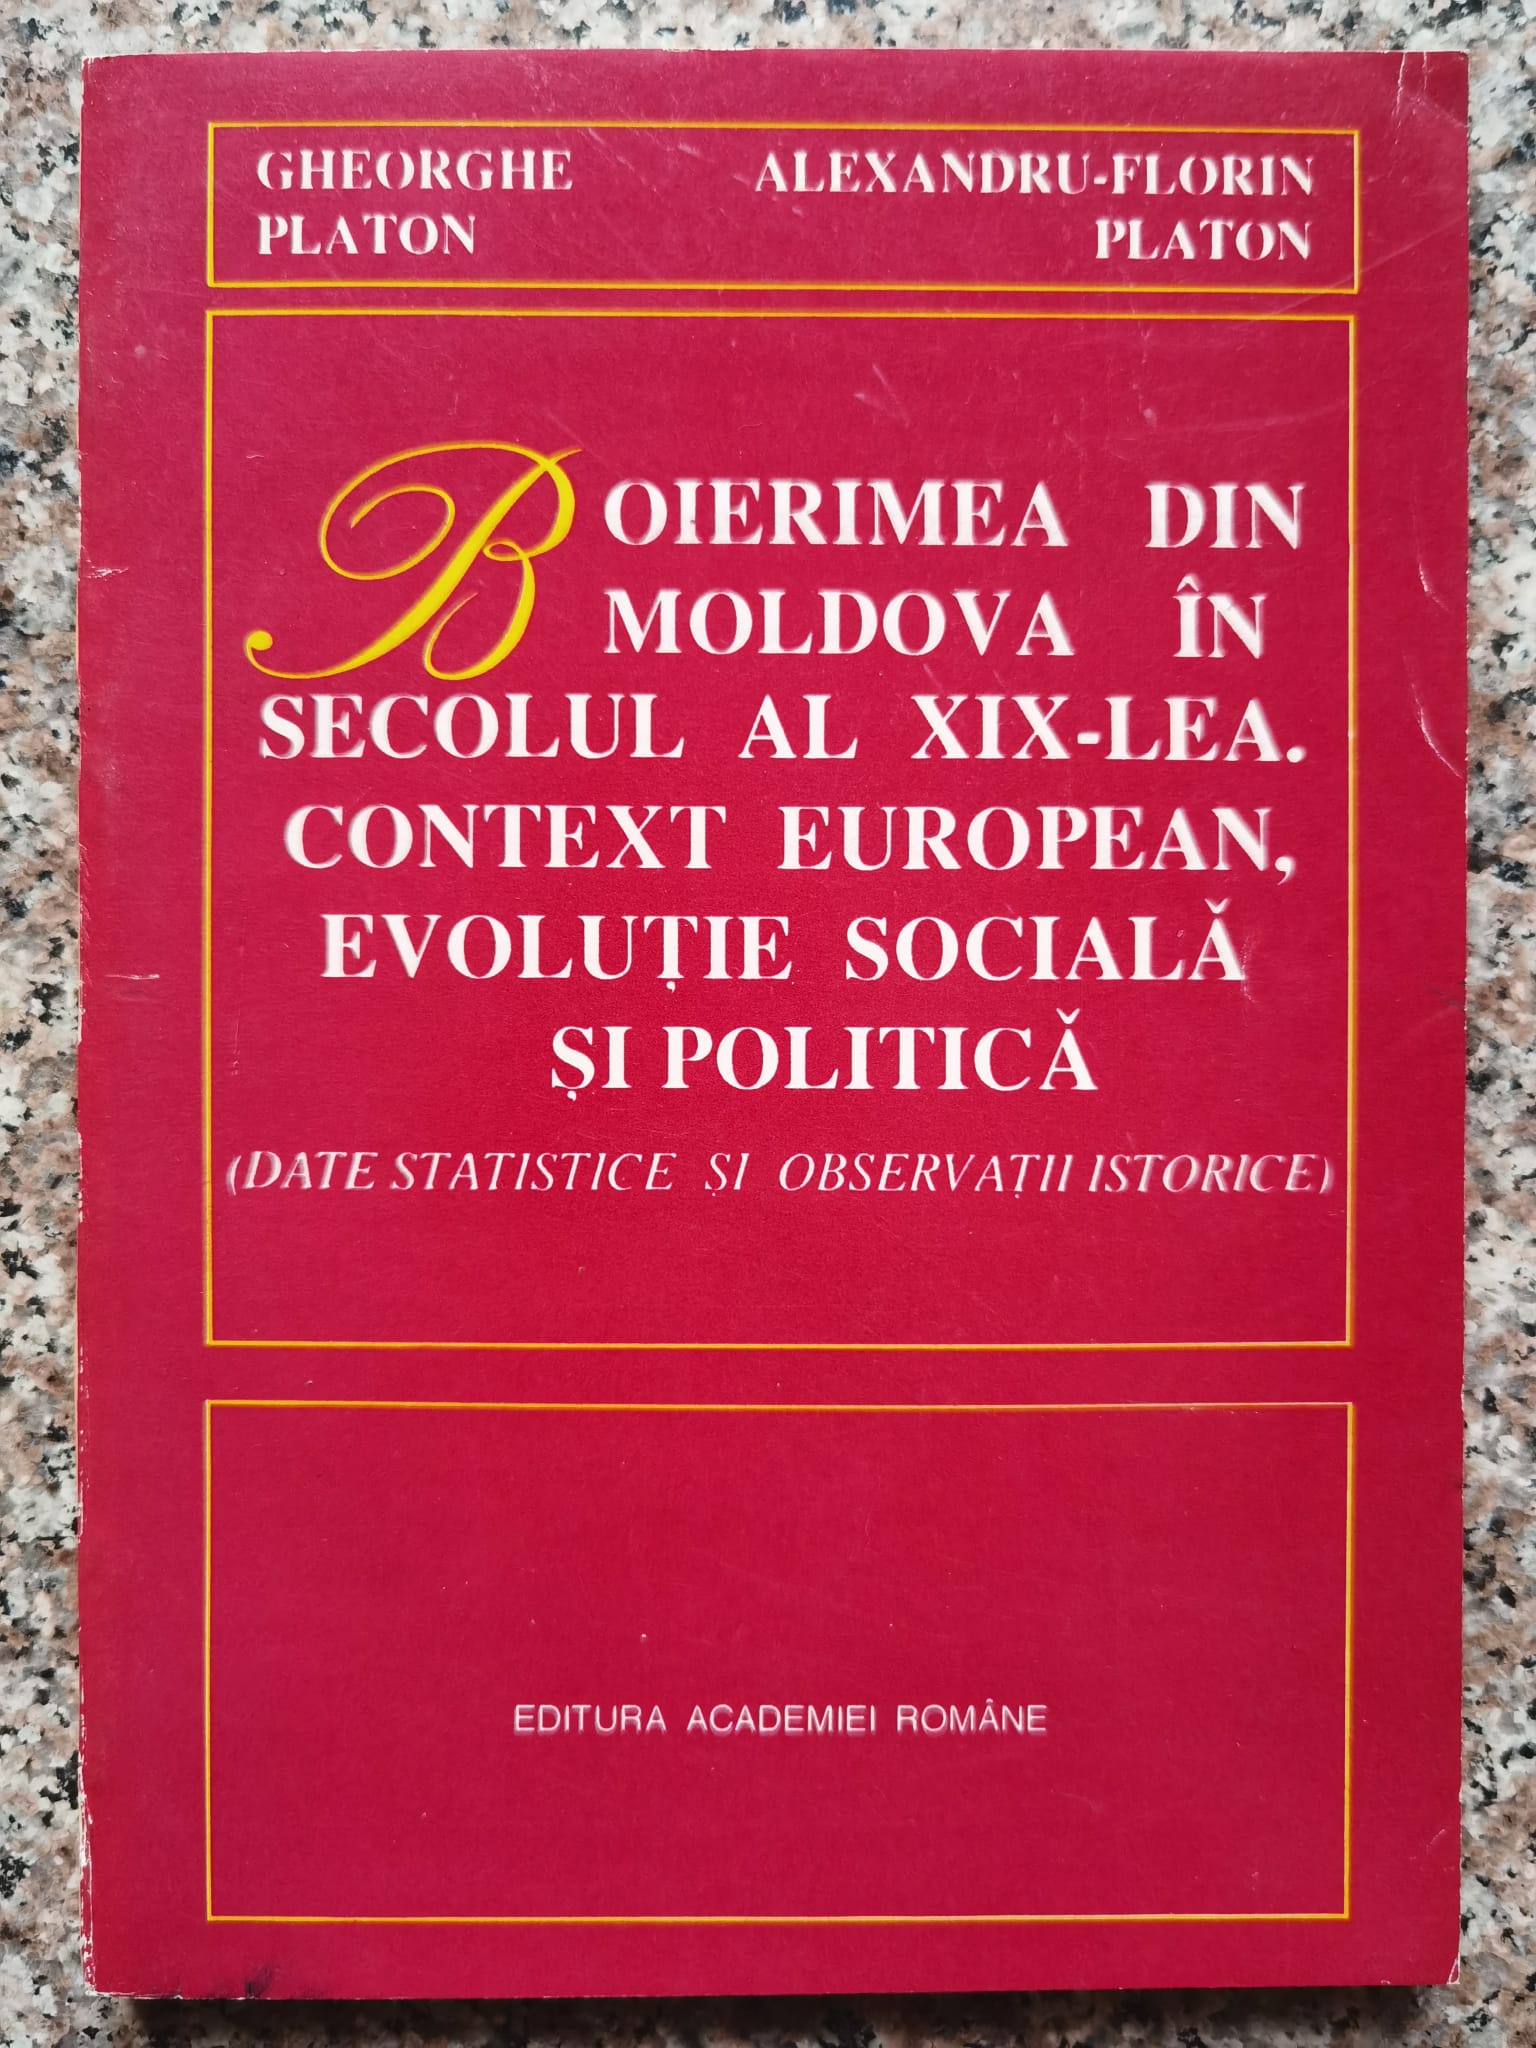 boierimea din moldova in secolul al xix-lea. context european, evolutie sociala si politica          gheorghe platon. alexandru-florin platon                                                            